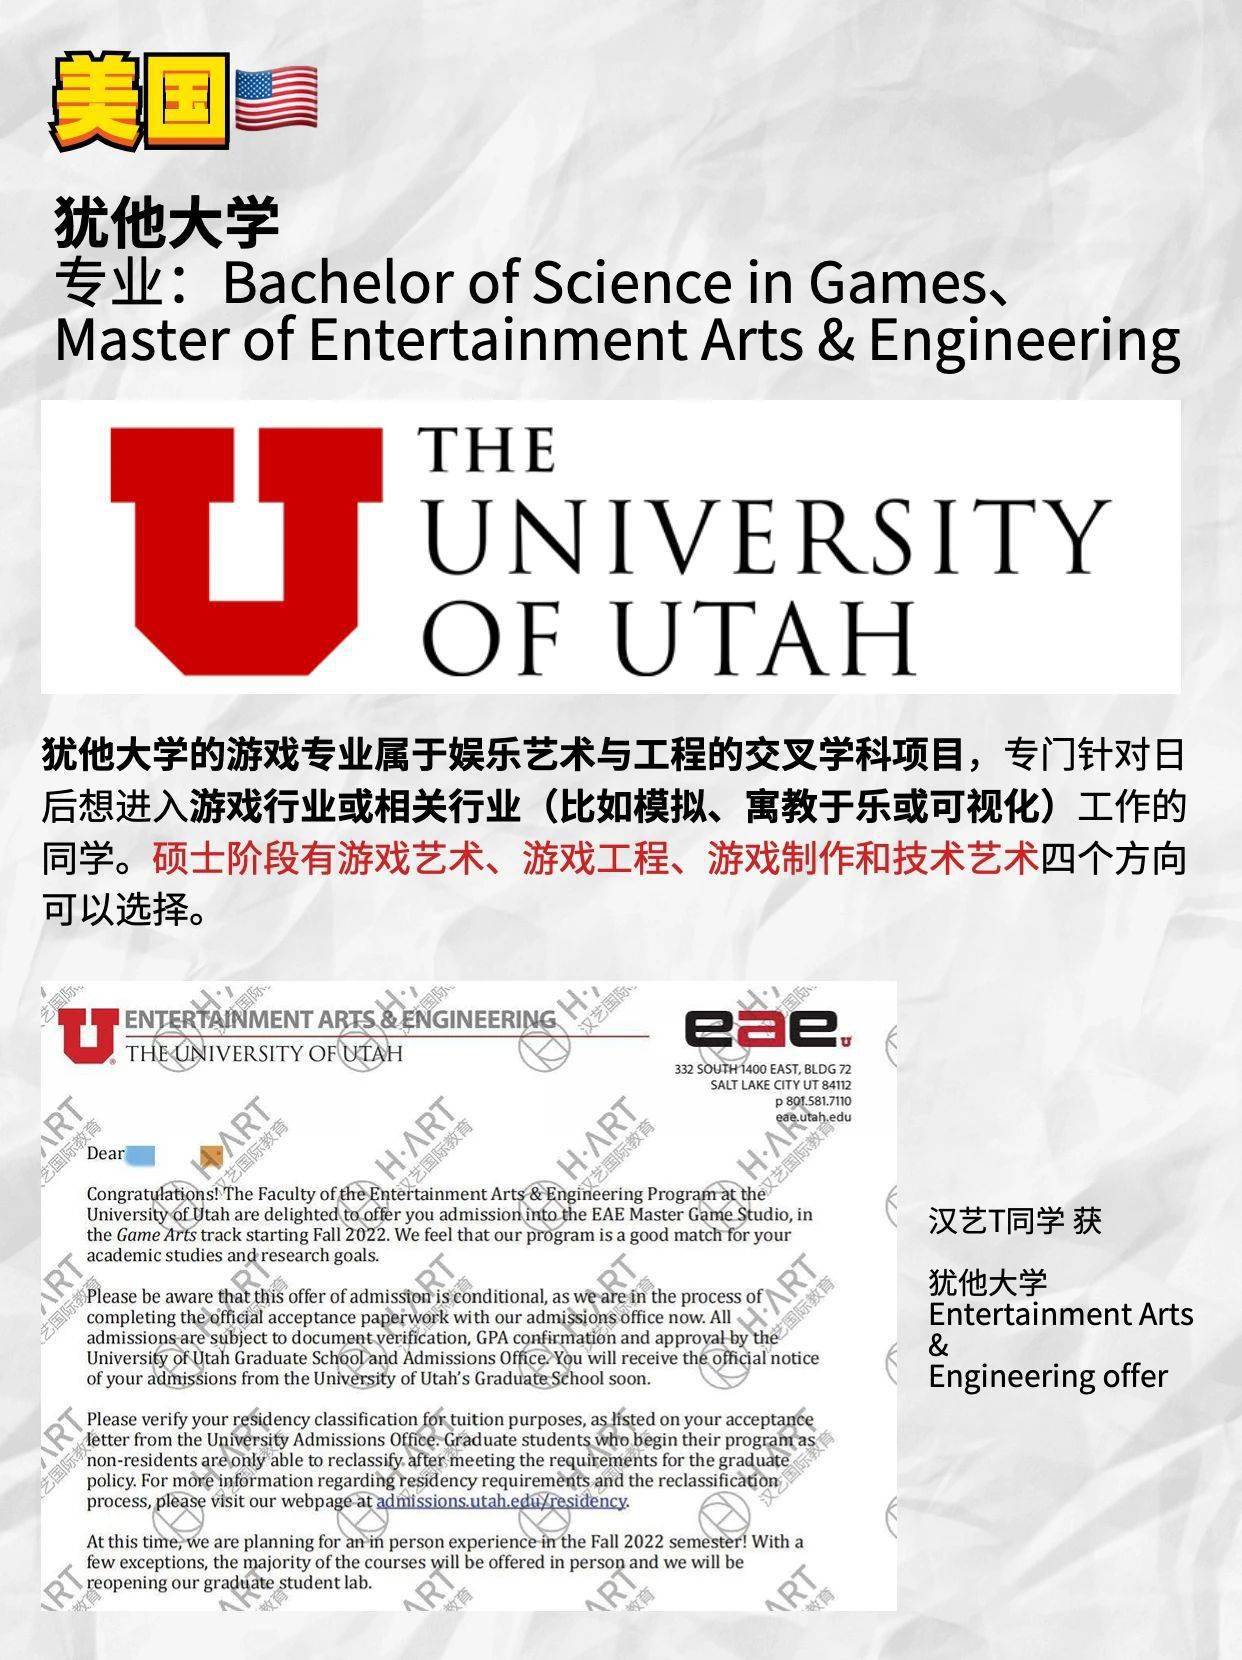 大学专业游戏制作_游戏专业大学_大学专业游戏开发